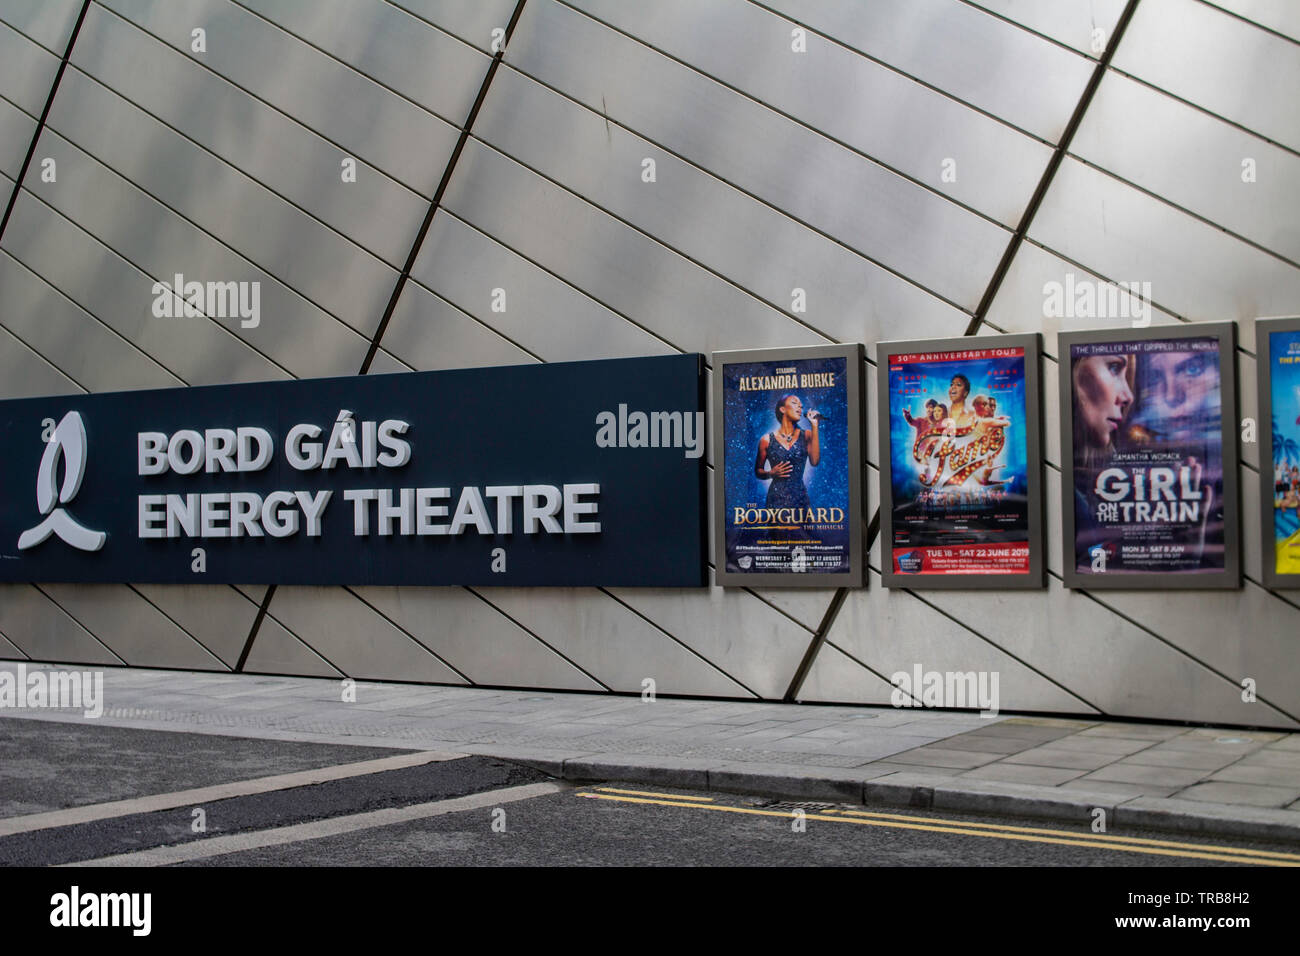 Il Bord Gais Energy Theatre di Dublino, Irlanda, con avvisi sui prossimi eventi. Foto Stock